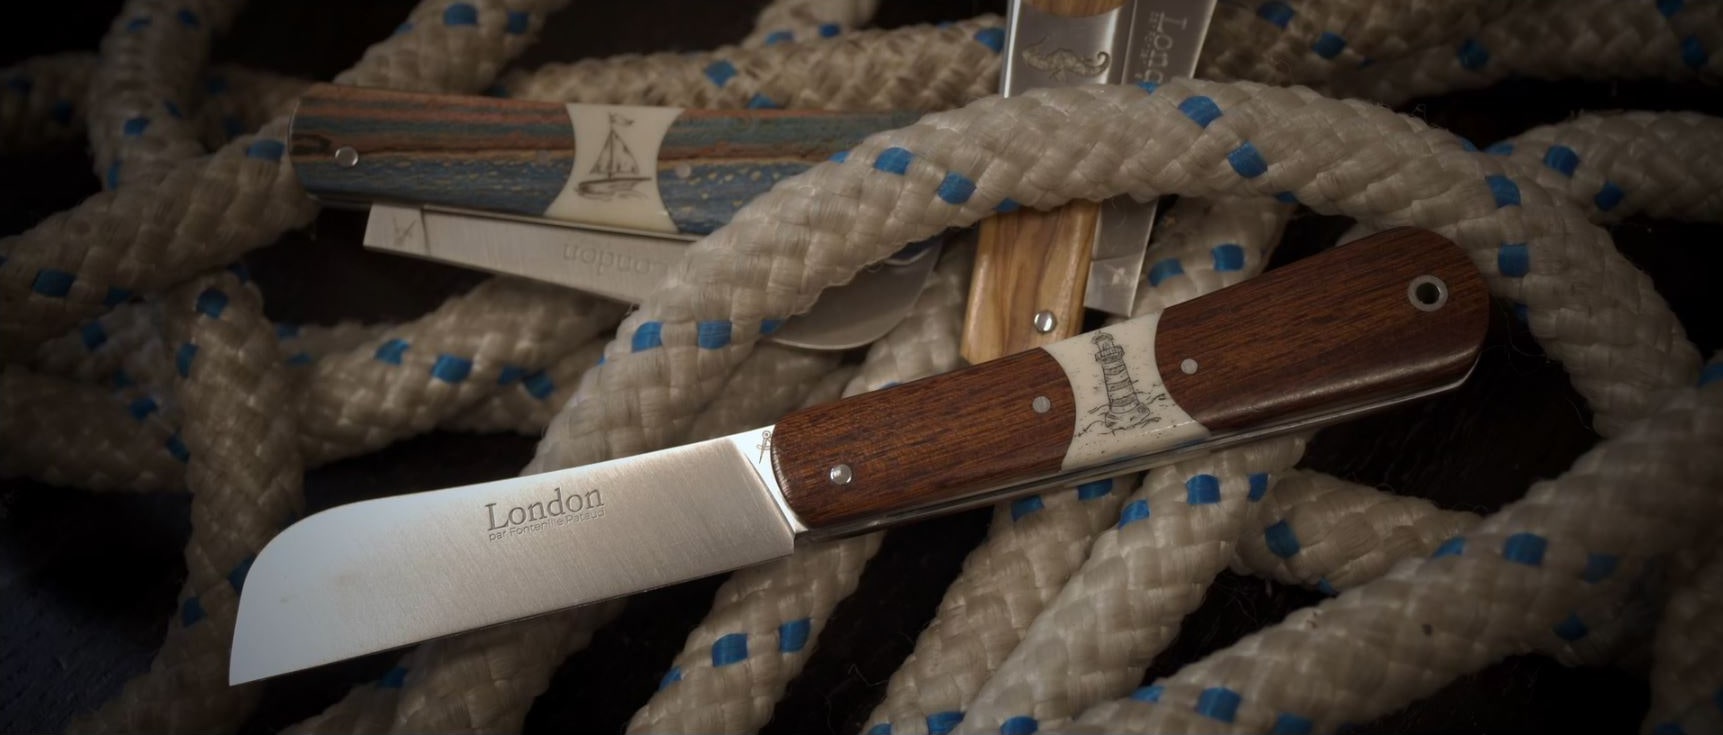 London sailor's knife handmade in France